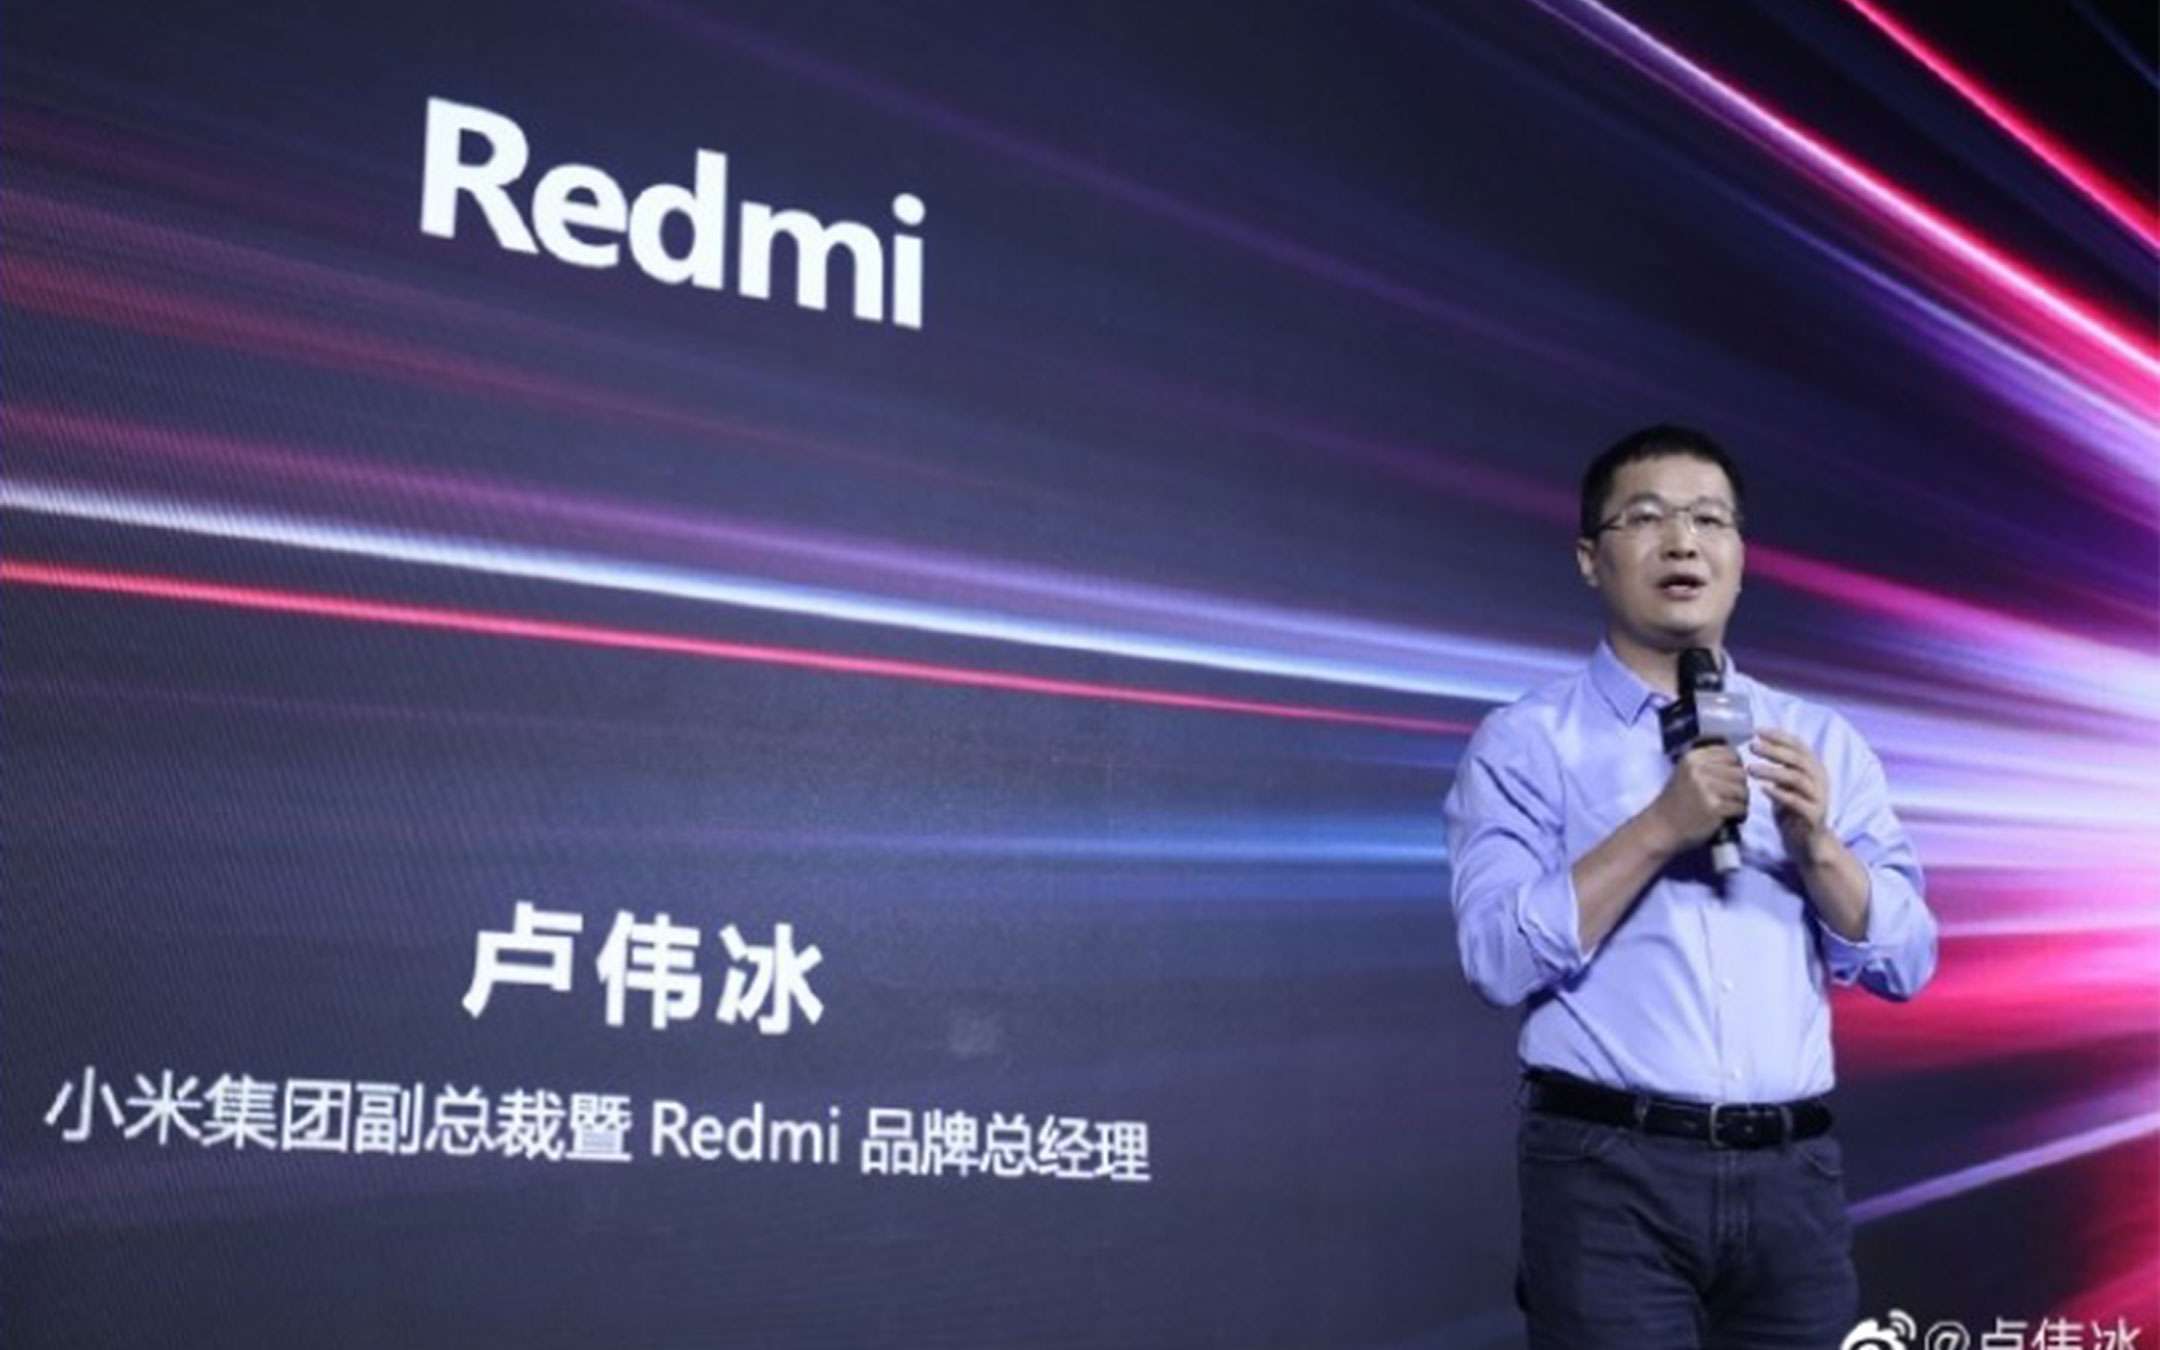 RedMi: gaming phone in arrivo, è ufficiale (quasi)